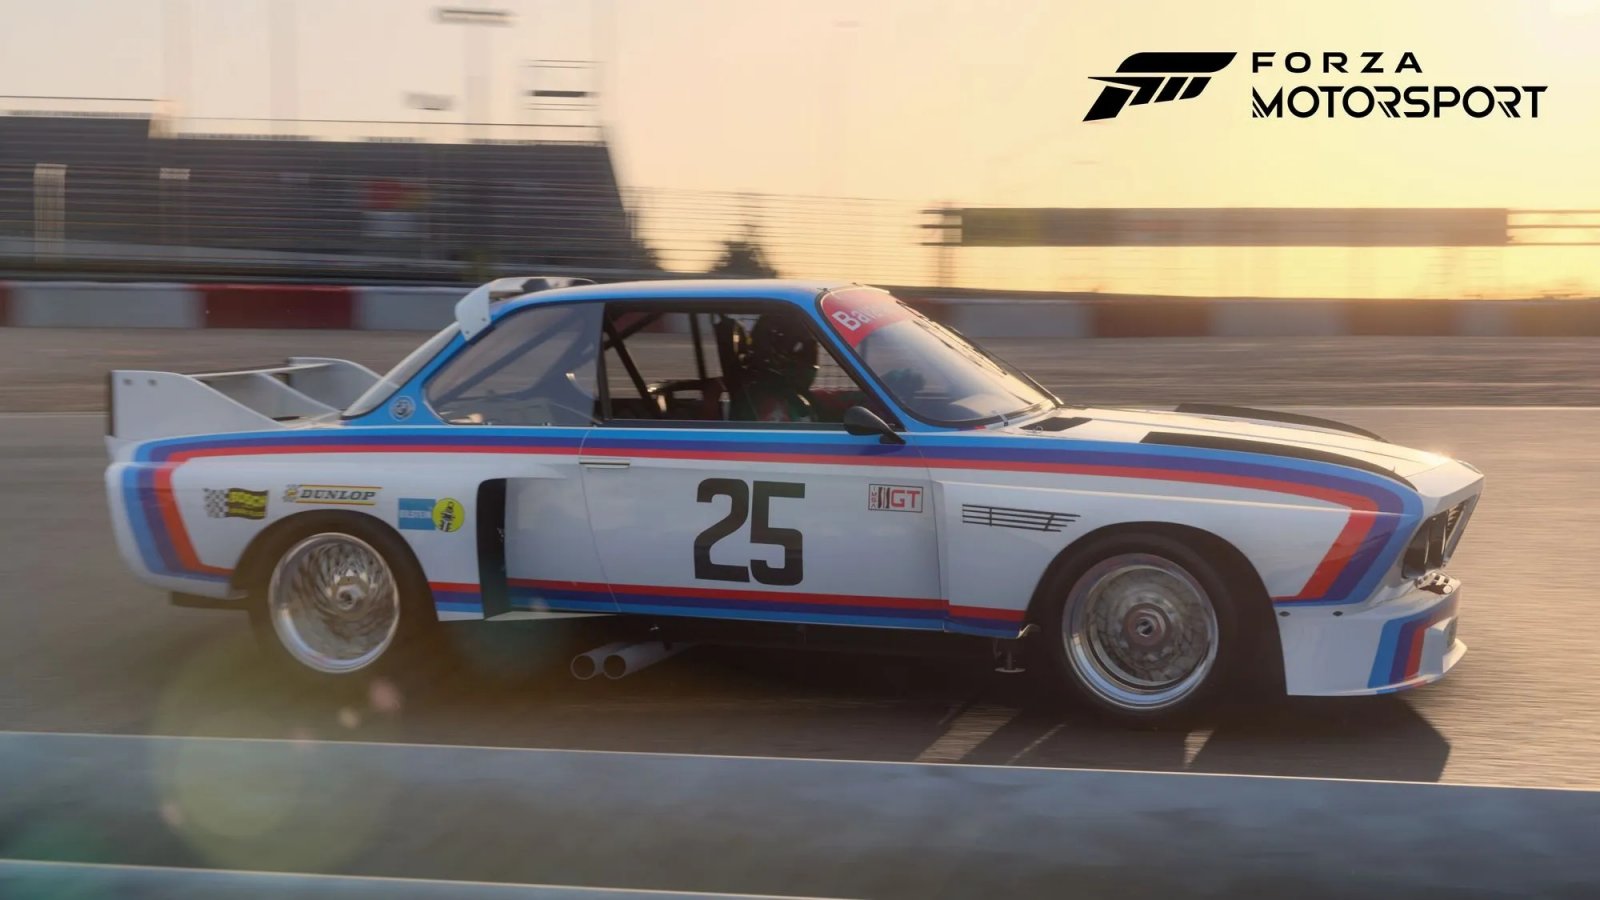 Forza Motorsport: disponibile il ricco Update 7, un trailer presenta le novità